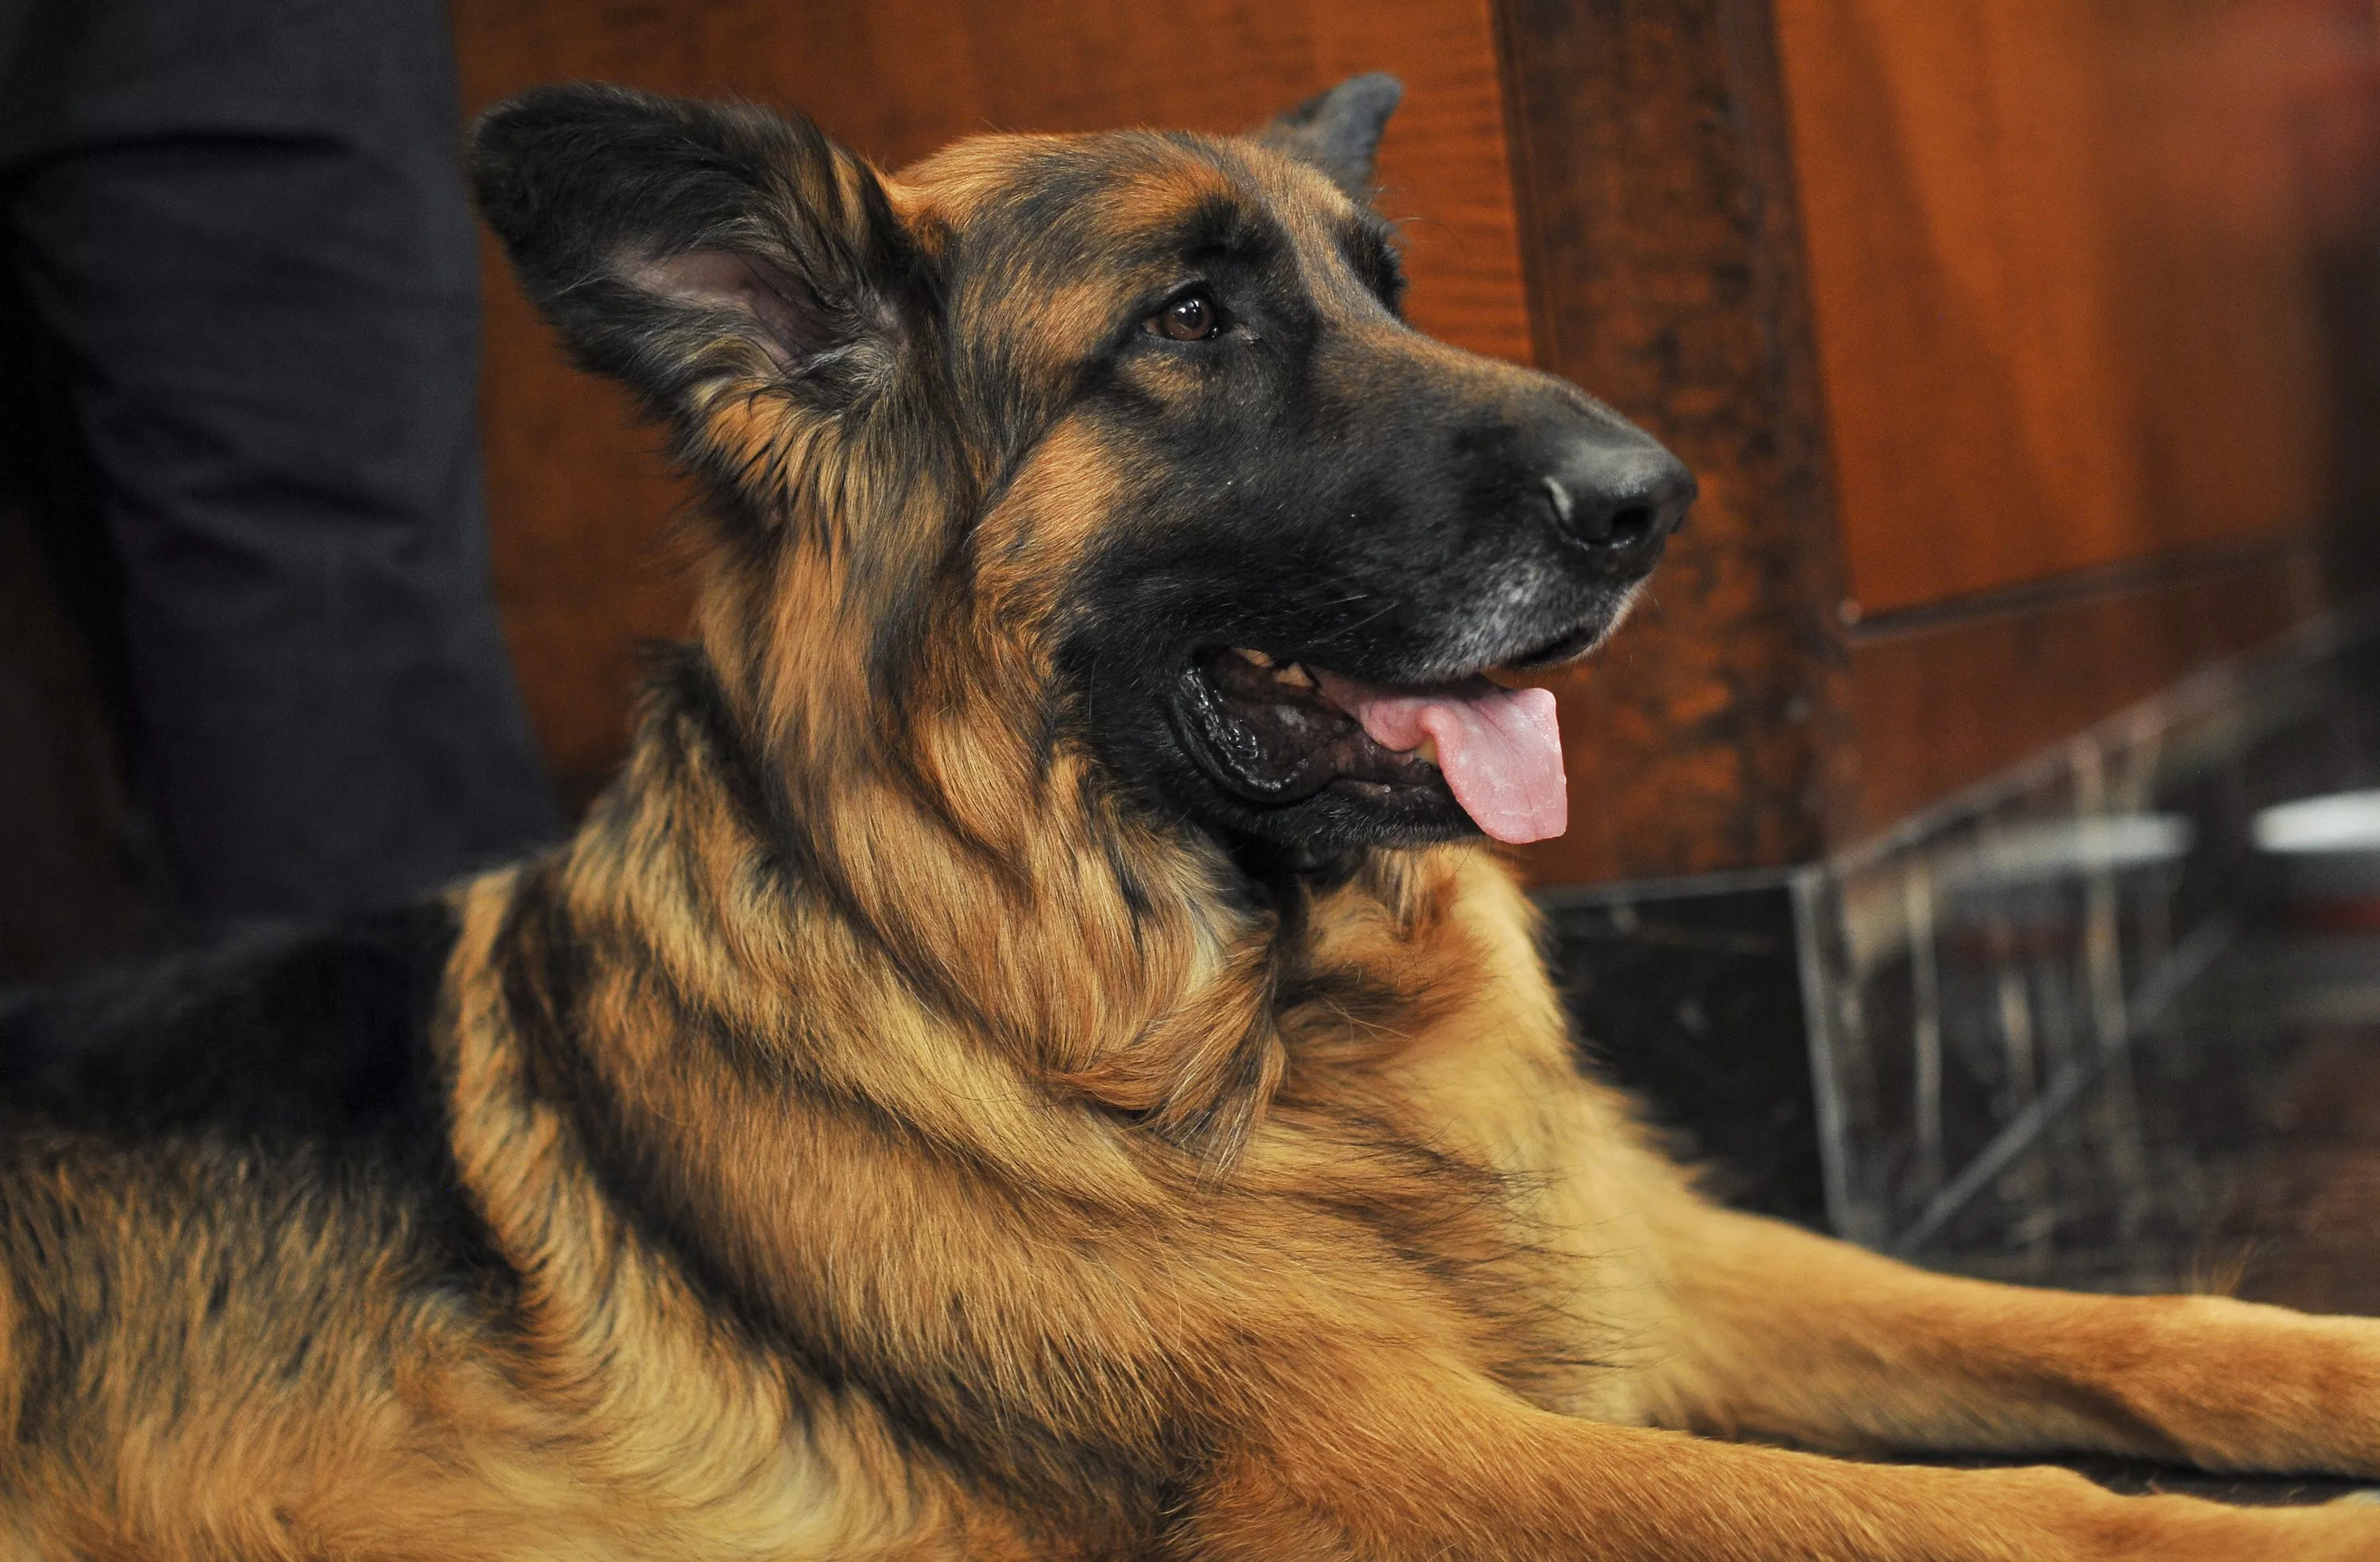 tysk shepherd dog NYC 2015